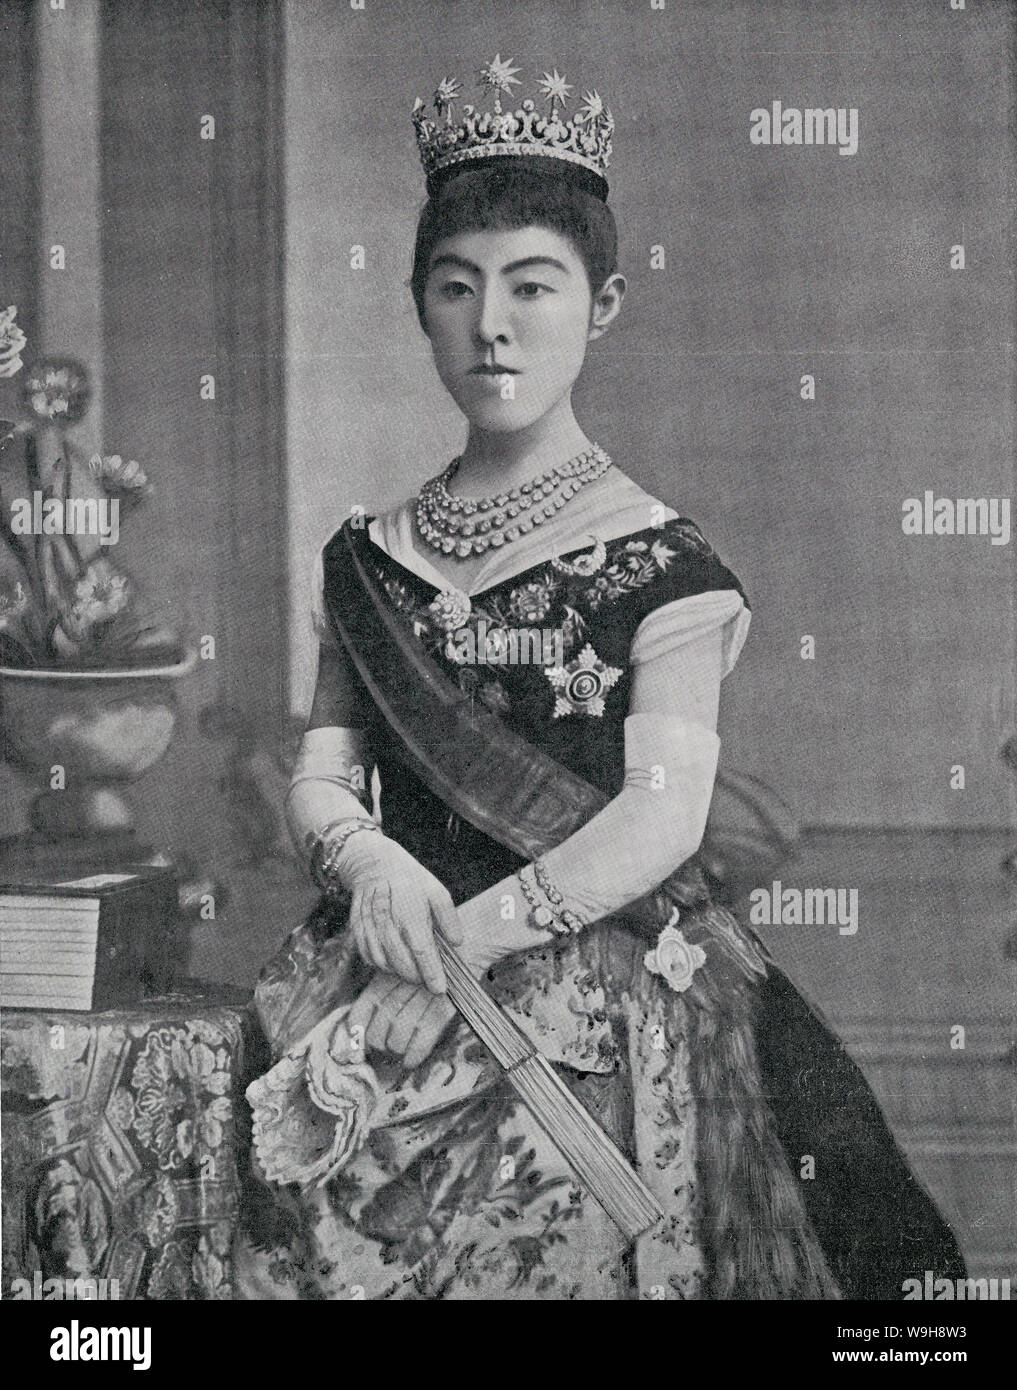 [1900s Japan - Japanische Empress Shoken] - Portrait von Empress Shoken (昭憲皇后, shoken Kogo, 1849 - 1914), Gemahlin des Kaisers Meiji. Geboren als Masako Ichijo (一条勝子), nahm sie den Vornamen Haruko (美子) wenn Sie wurde von Kaiser Meiji am September 2, 1867 (keio 2). Ihr Name wurde posthum an Empress Shoken geändert. Veröffentlicht in der britischen Wochenzeitung der König und seine Marine und Armee am 13. Februar 1904 gezeigt. 19 Vintage Zeitung Abbildung. Stockfoto